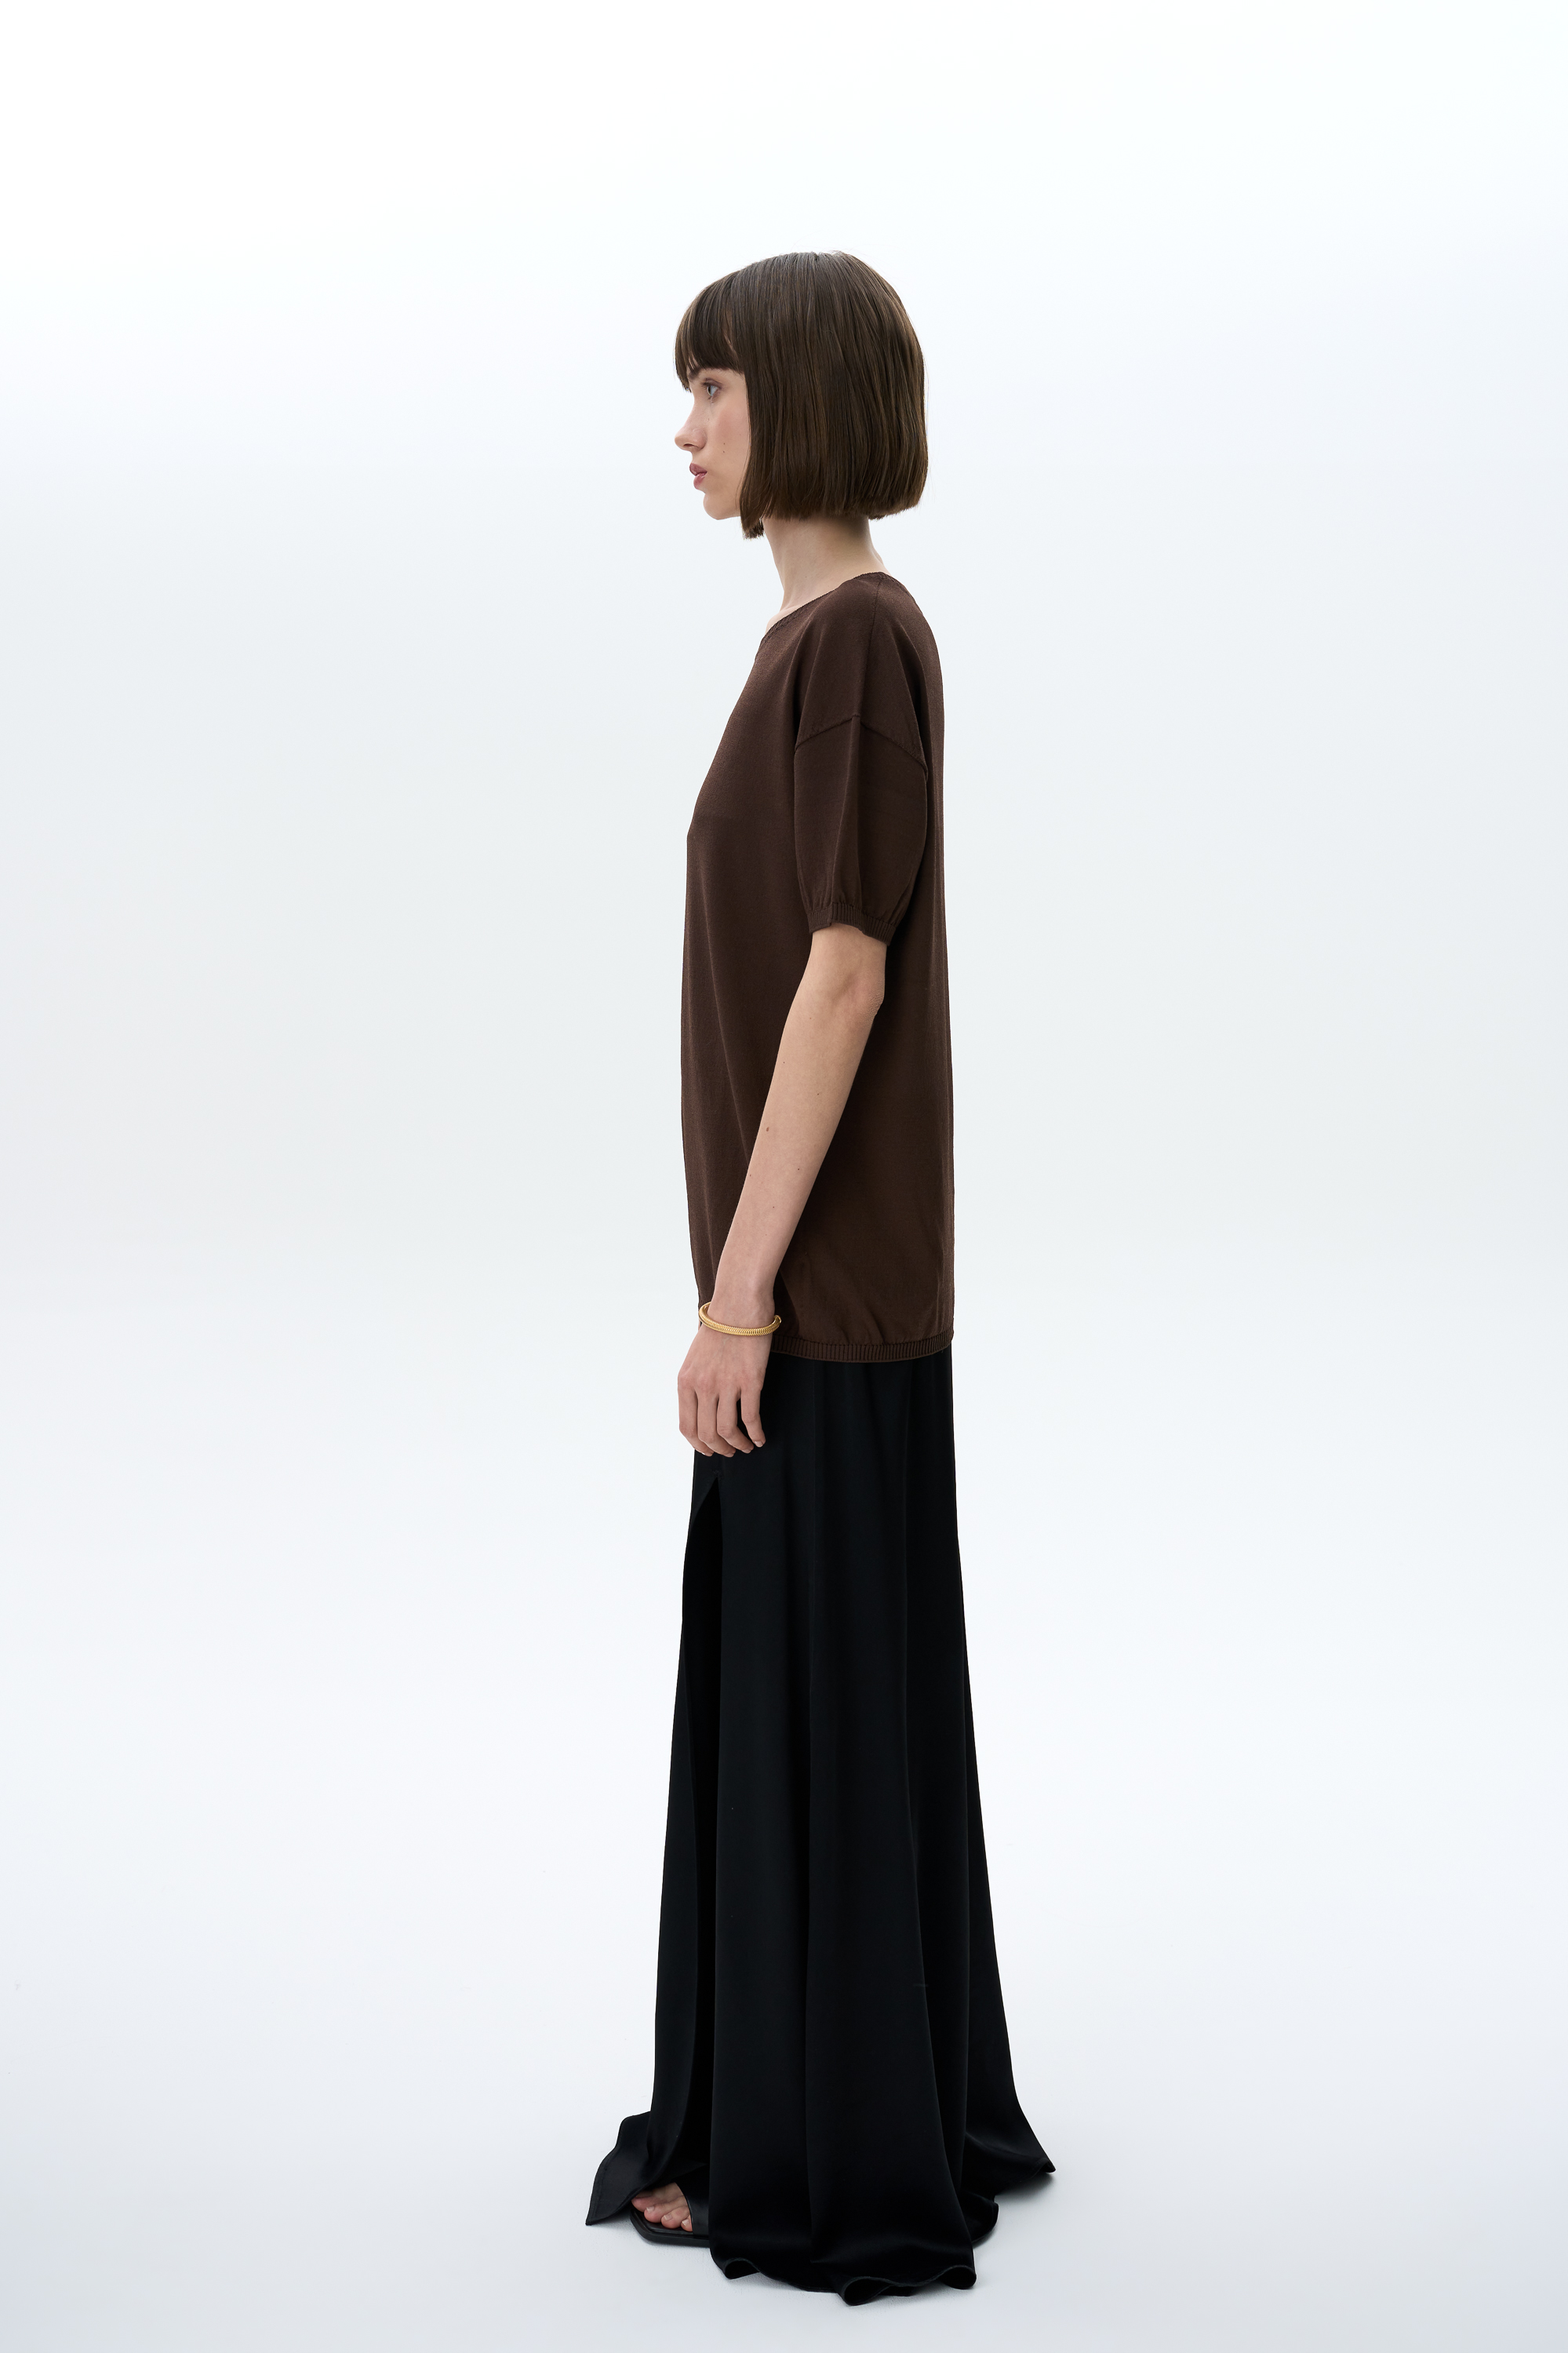 Skirt 4634-01 Black from BRUSNiKA